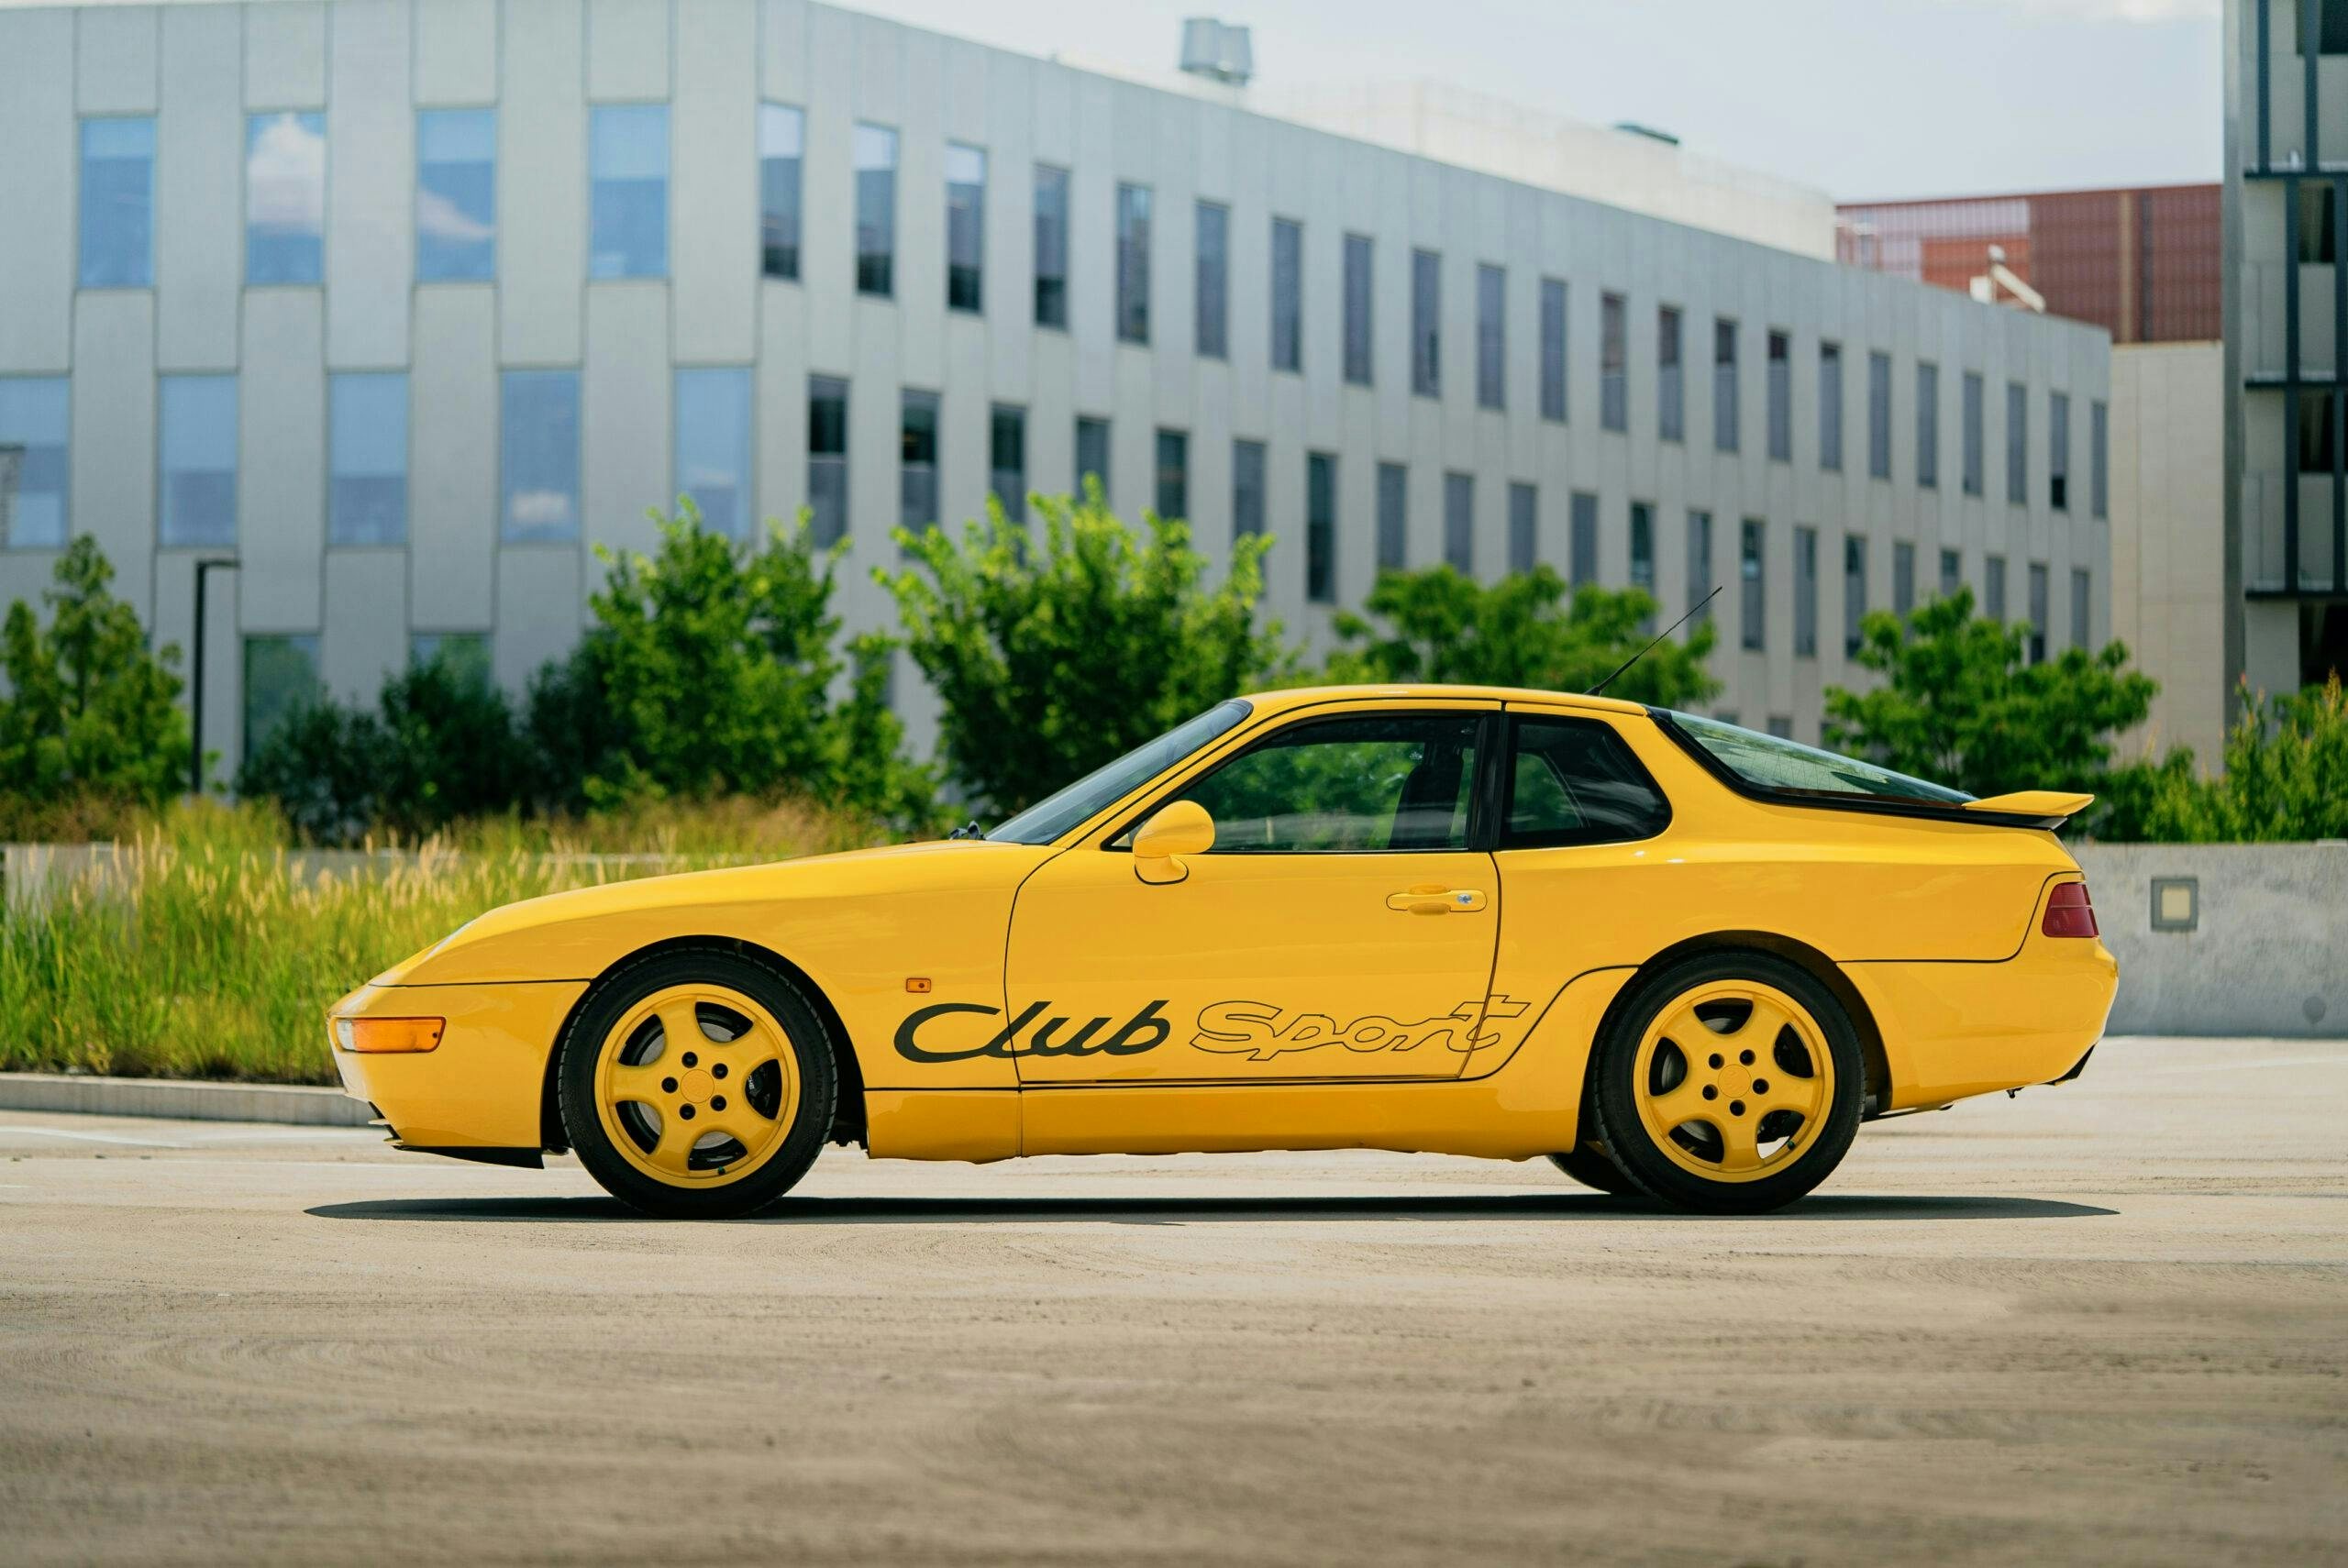 1993 Porsche 968 Club Sport. Photo: Joopiter